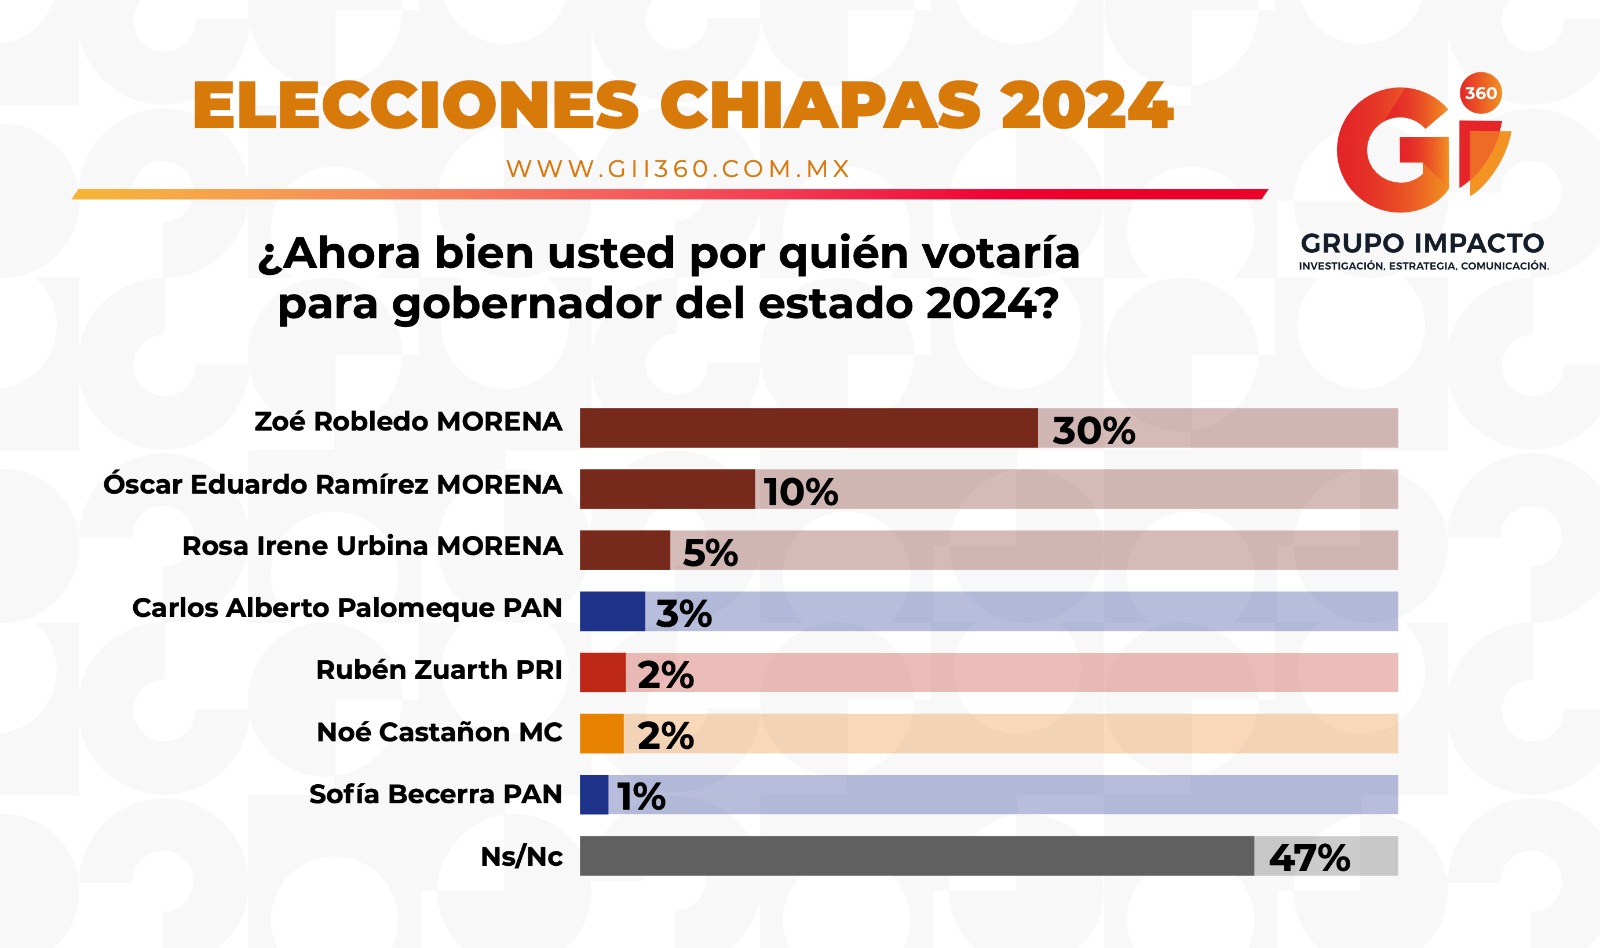 Zoé Robledo en las encuestas: 20 puntos arriba